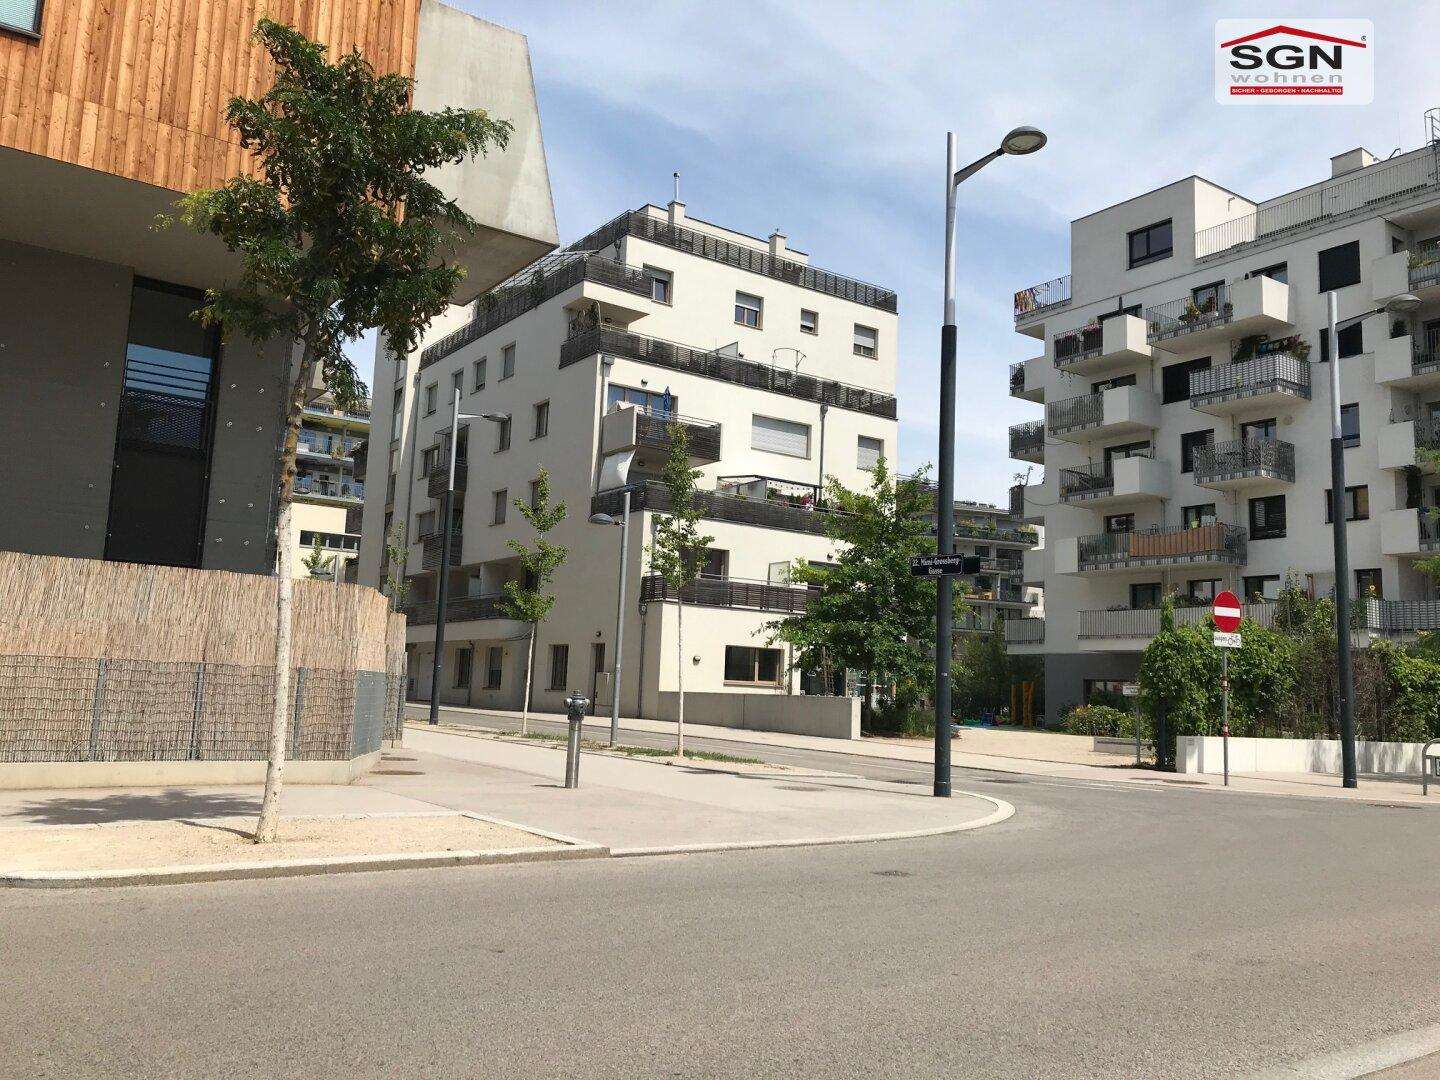 3 Zimmer-Wohnungen mit Balkon in Miete (Baugruppe)